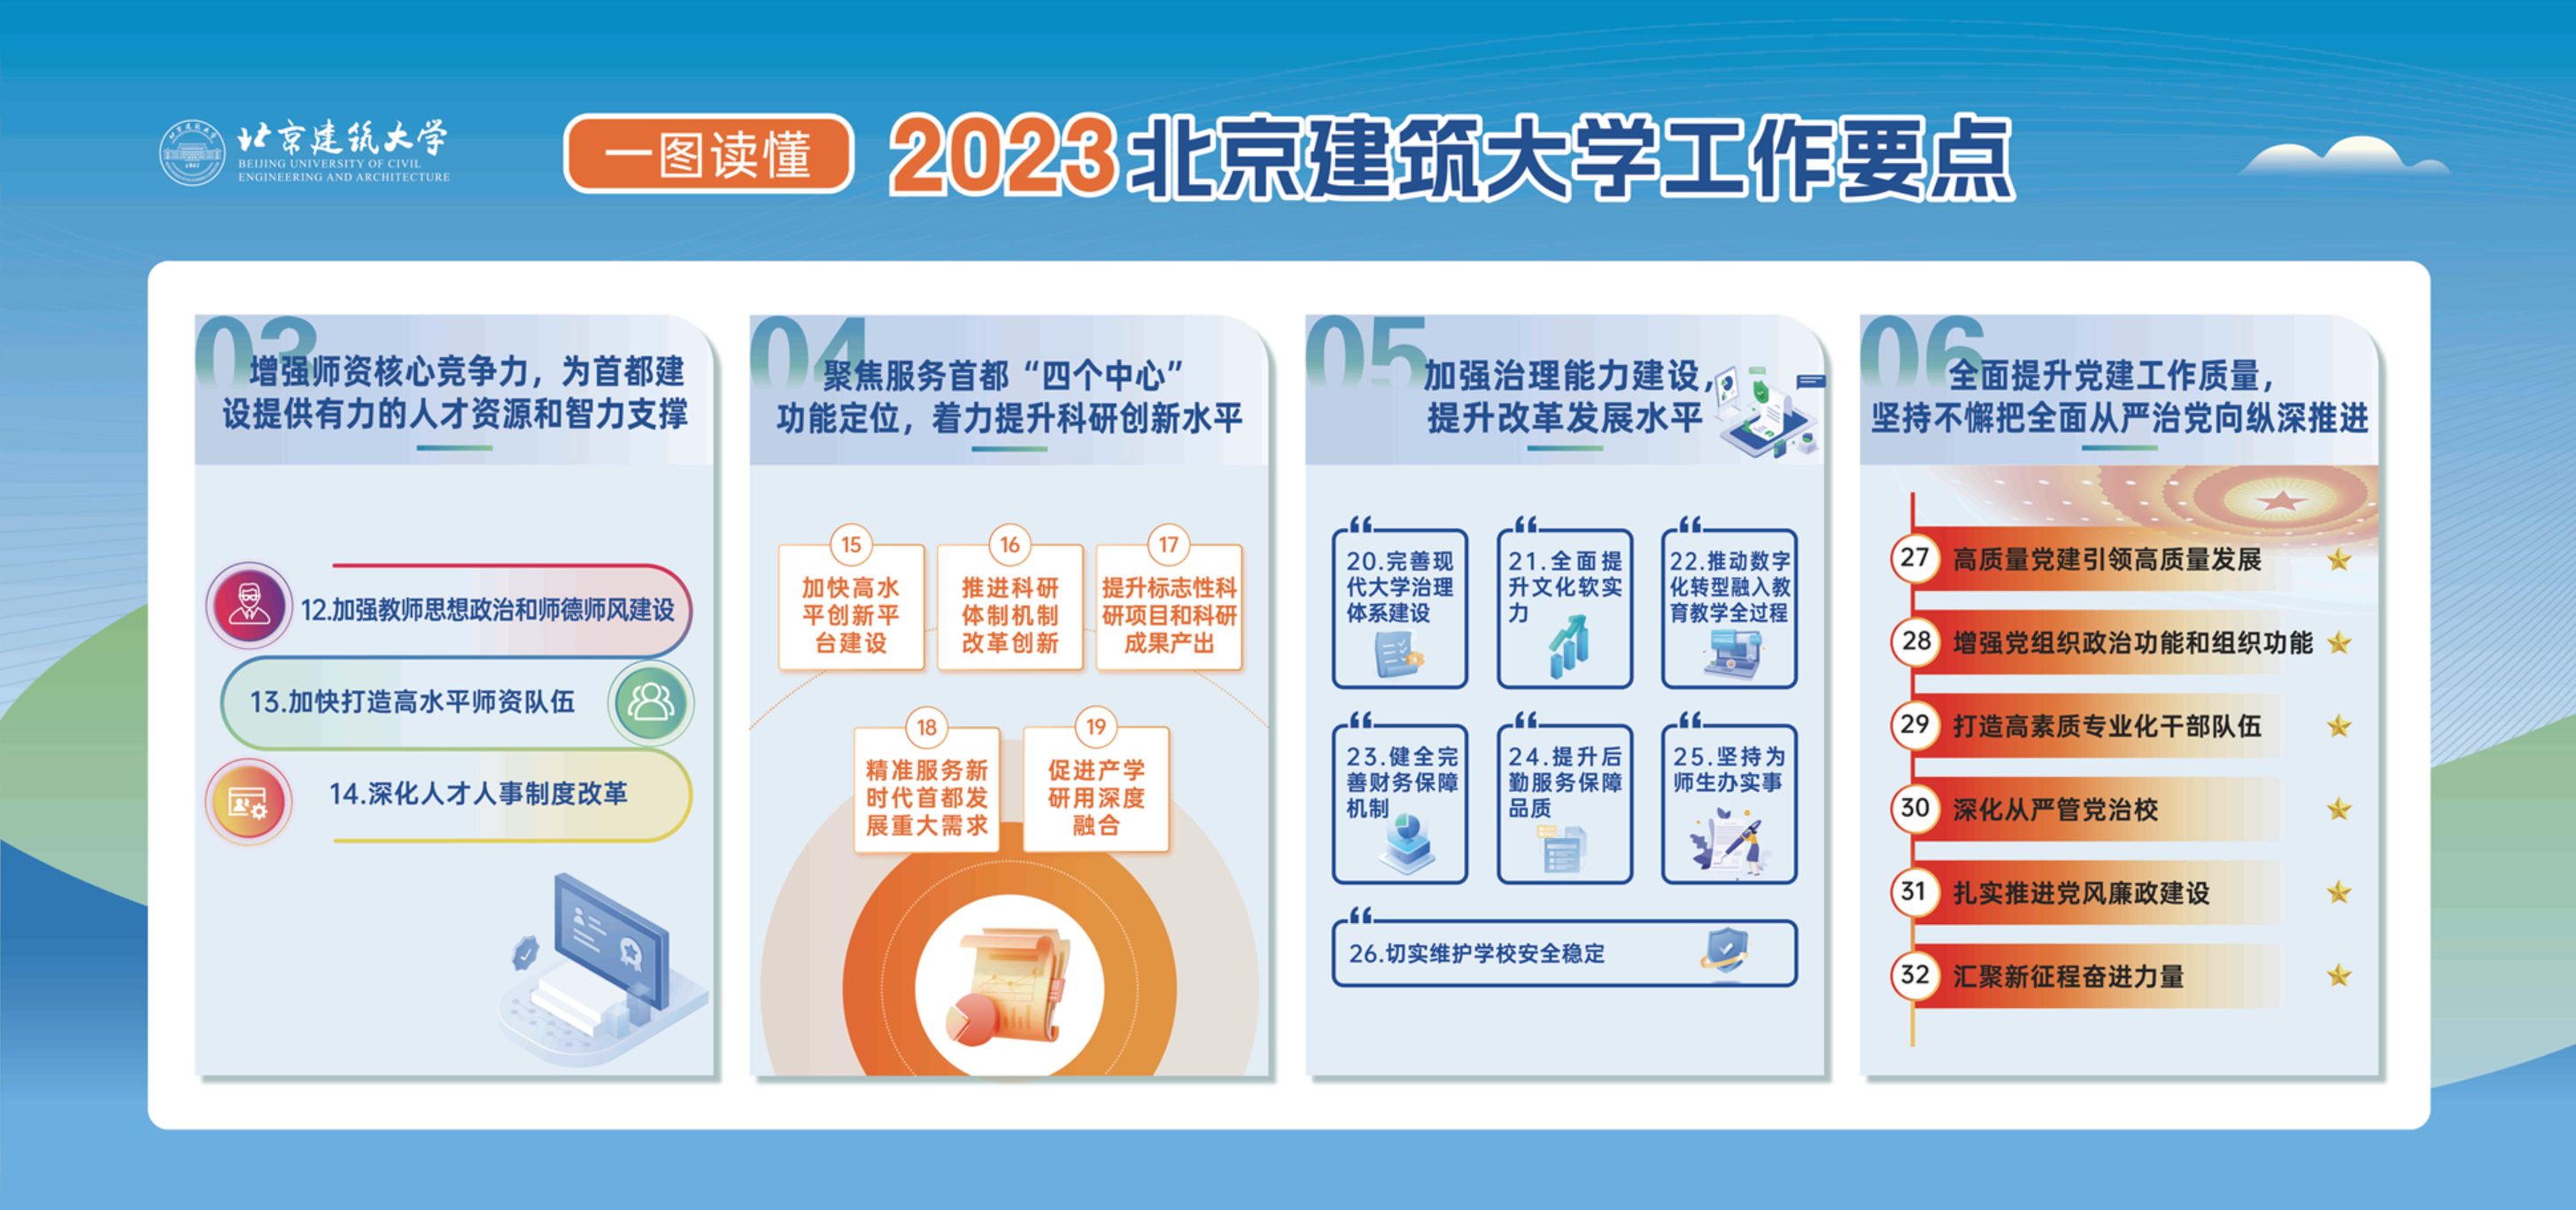 一图读懂 2023北京建筑大学工作要点